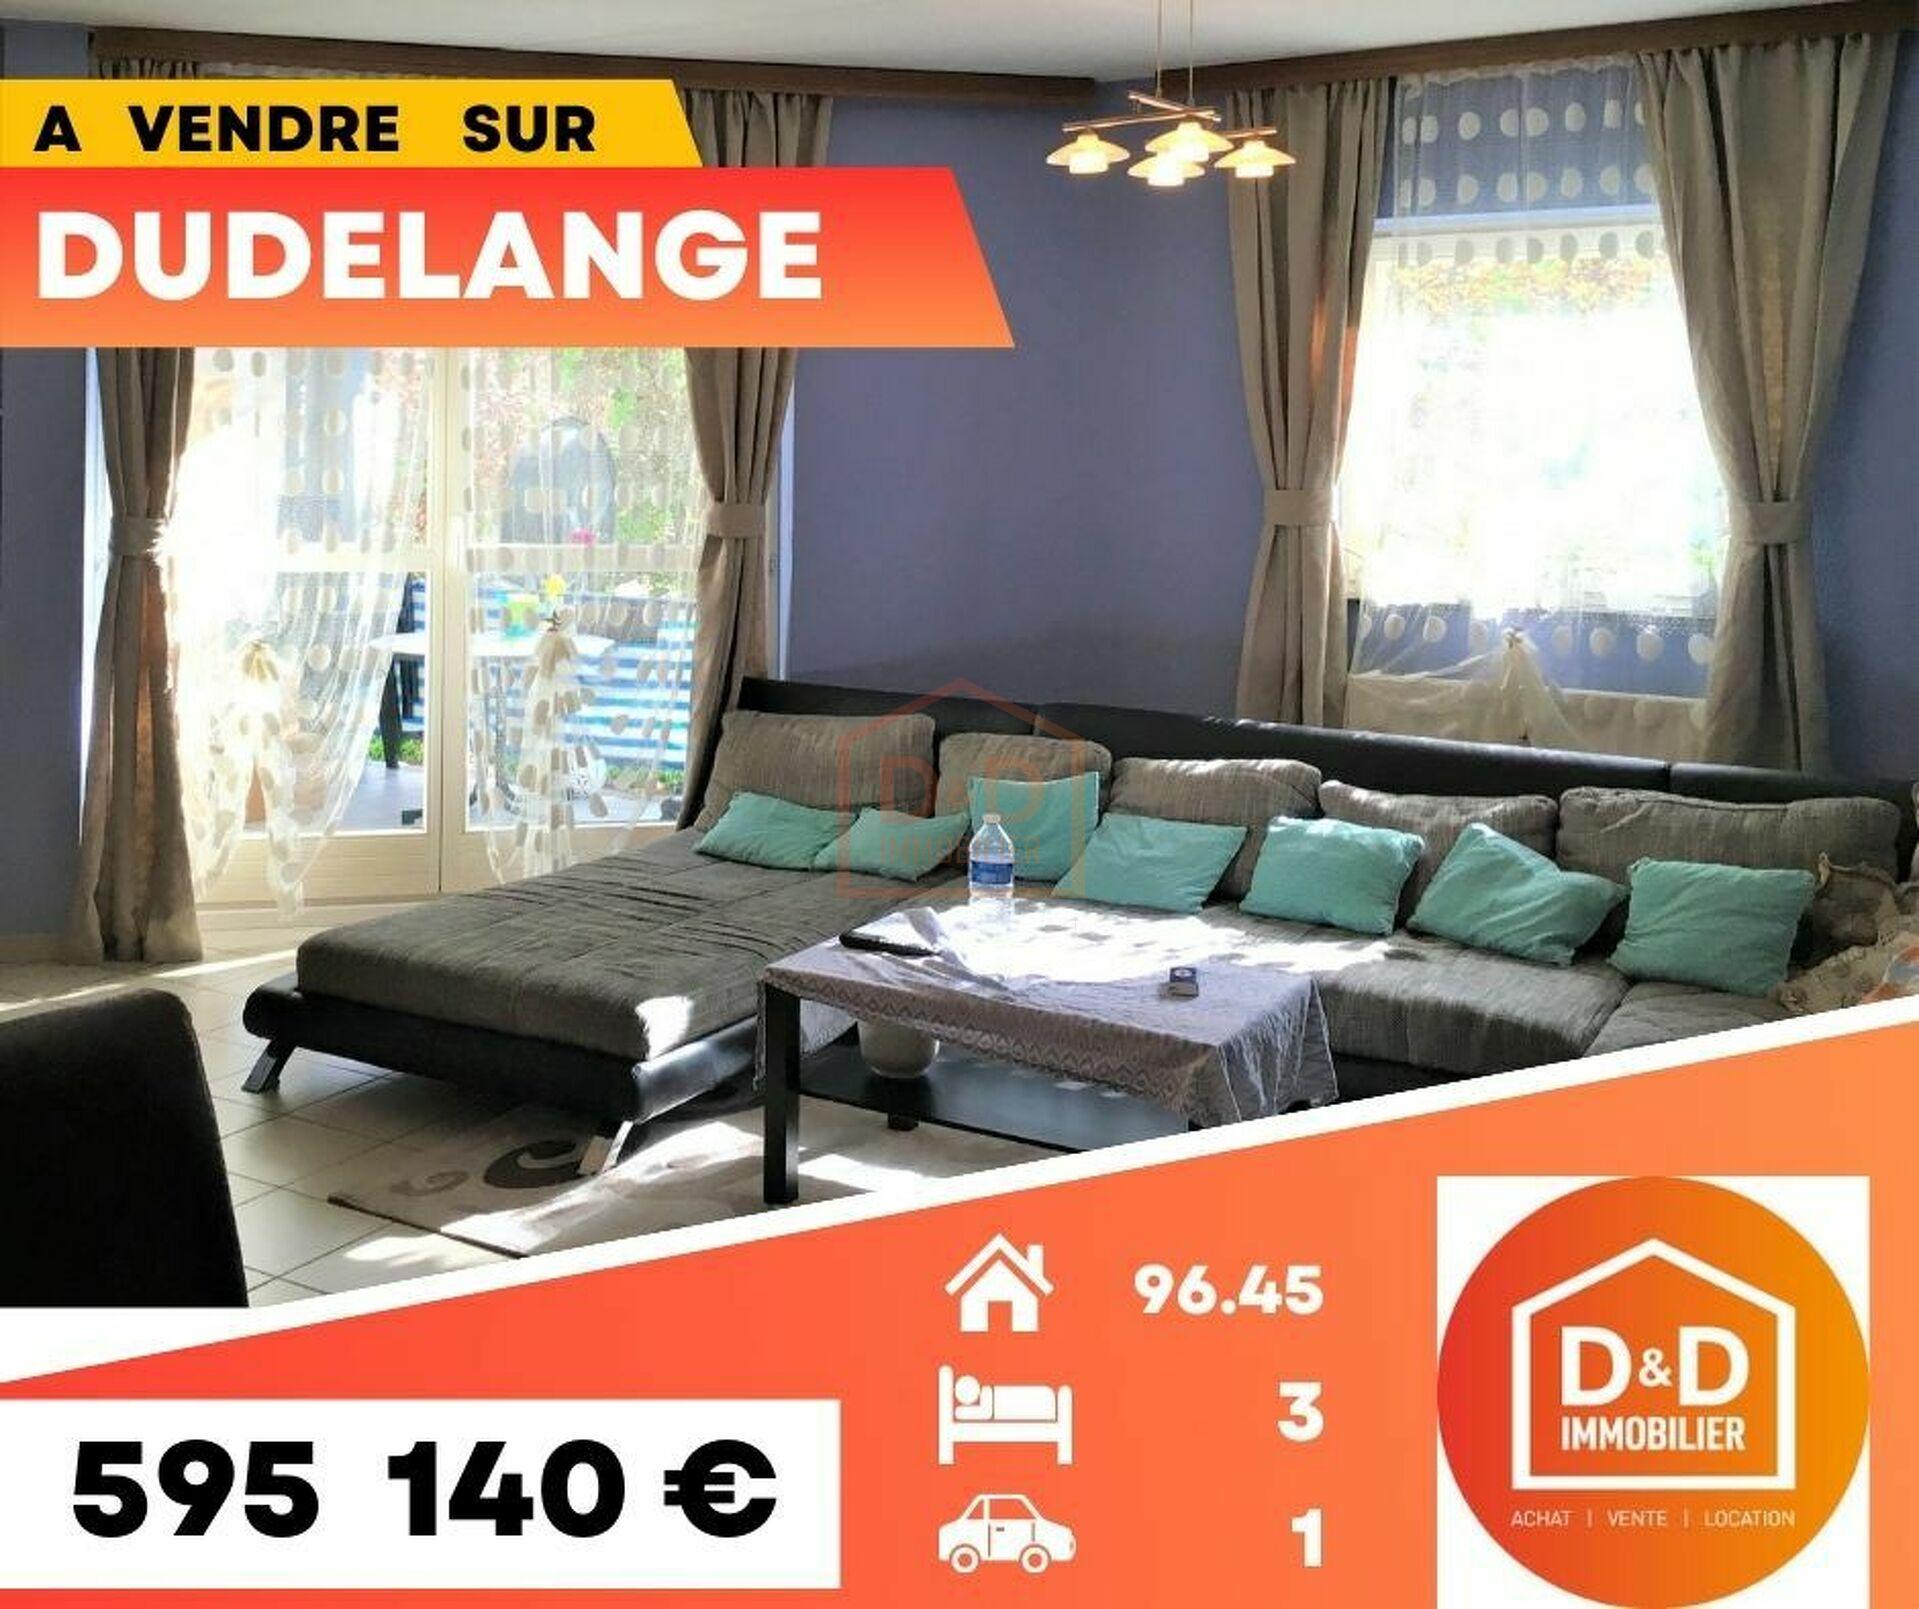 Appartement à Dudelange, 96,45 m², 3 chambres, 1 salle de bain, 595 140 €